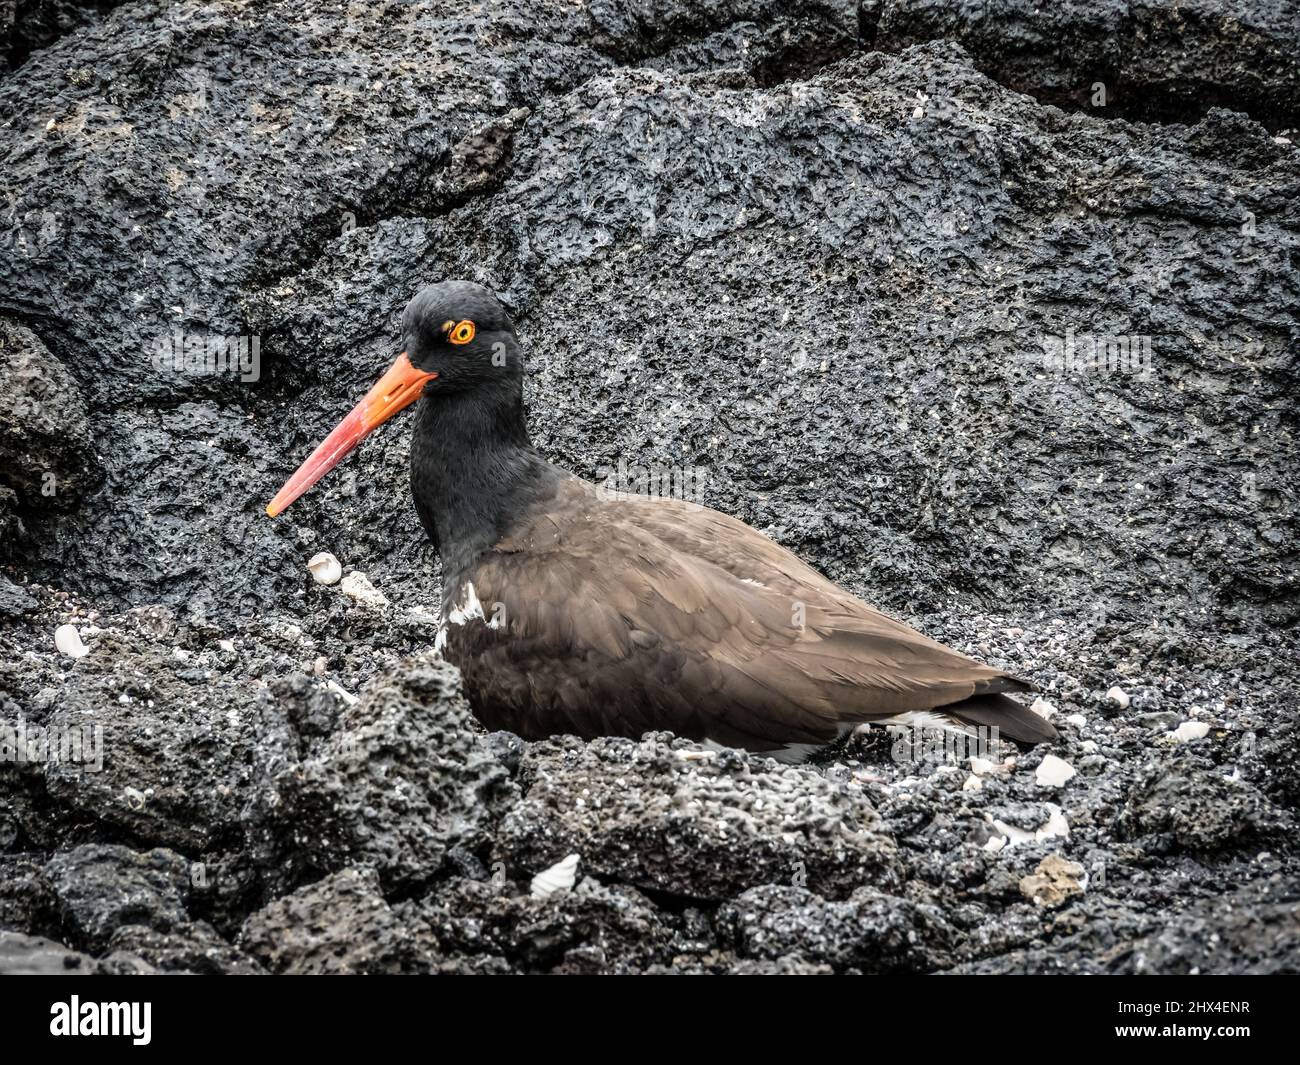 Oystercatcher bird, Fernandina Island, Galapagos, Ecuador Stock Photo